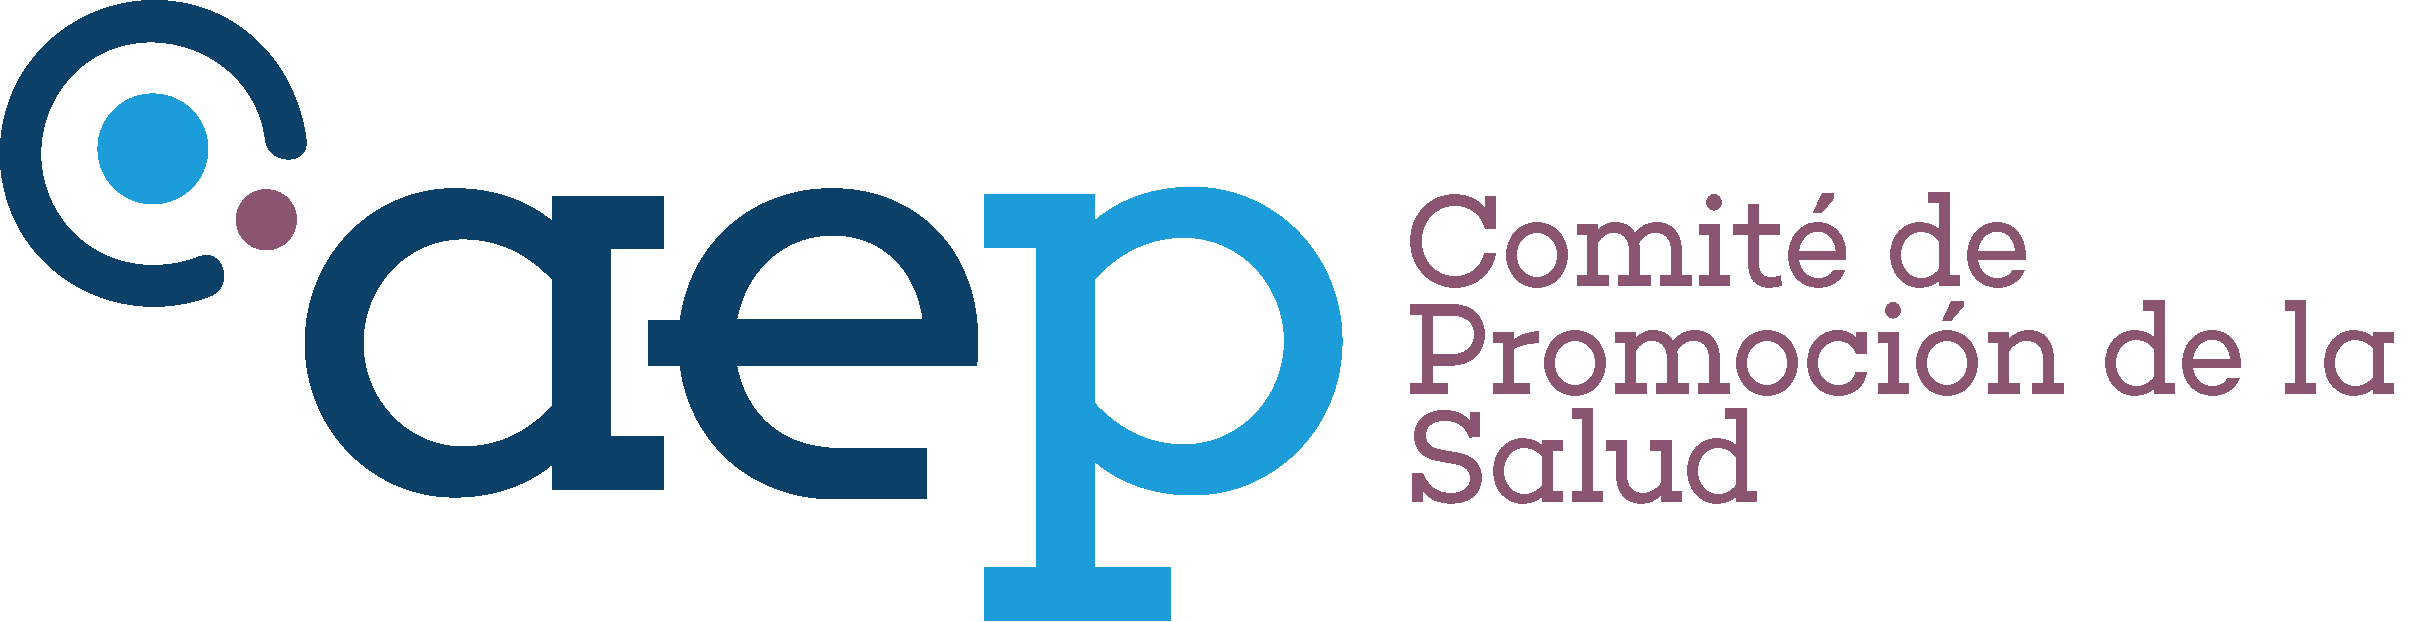 Logotipo Comité Promoción de la Salud AEP